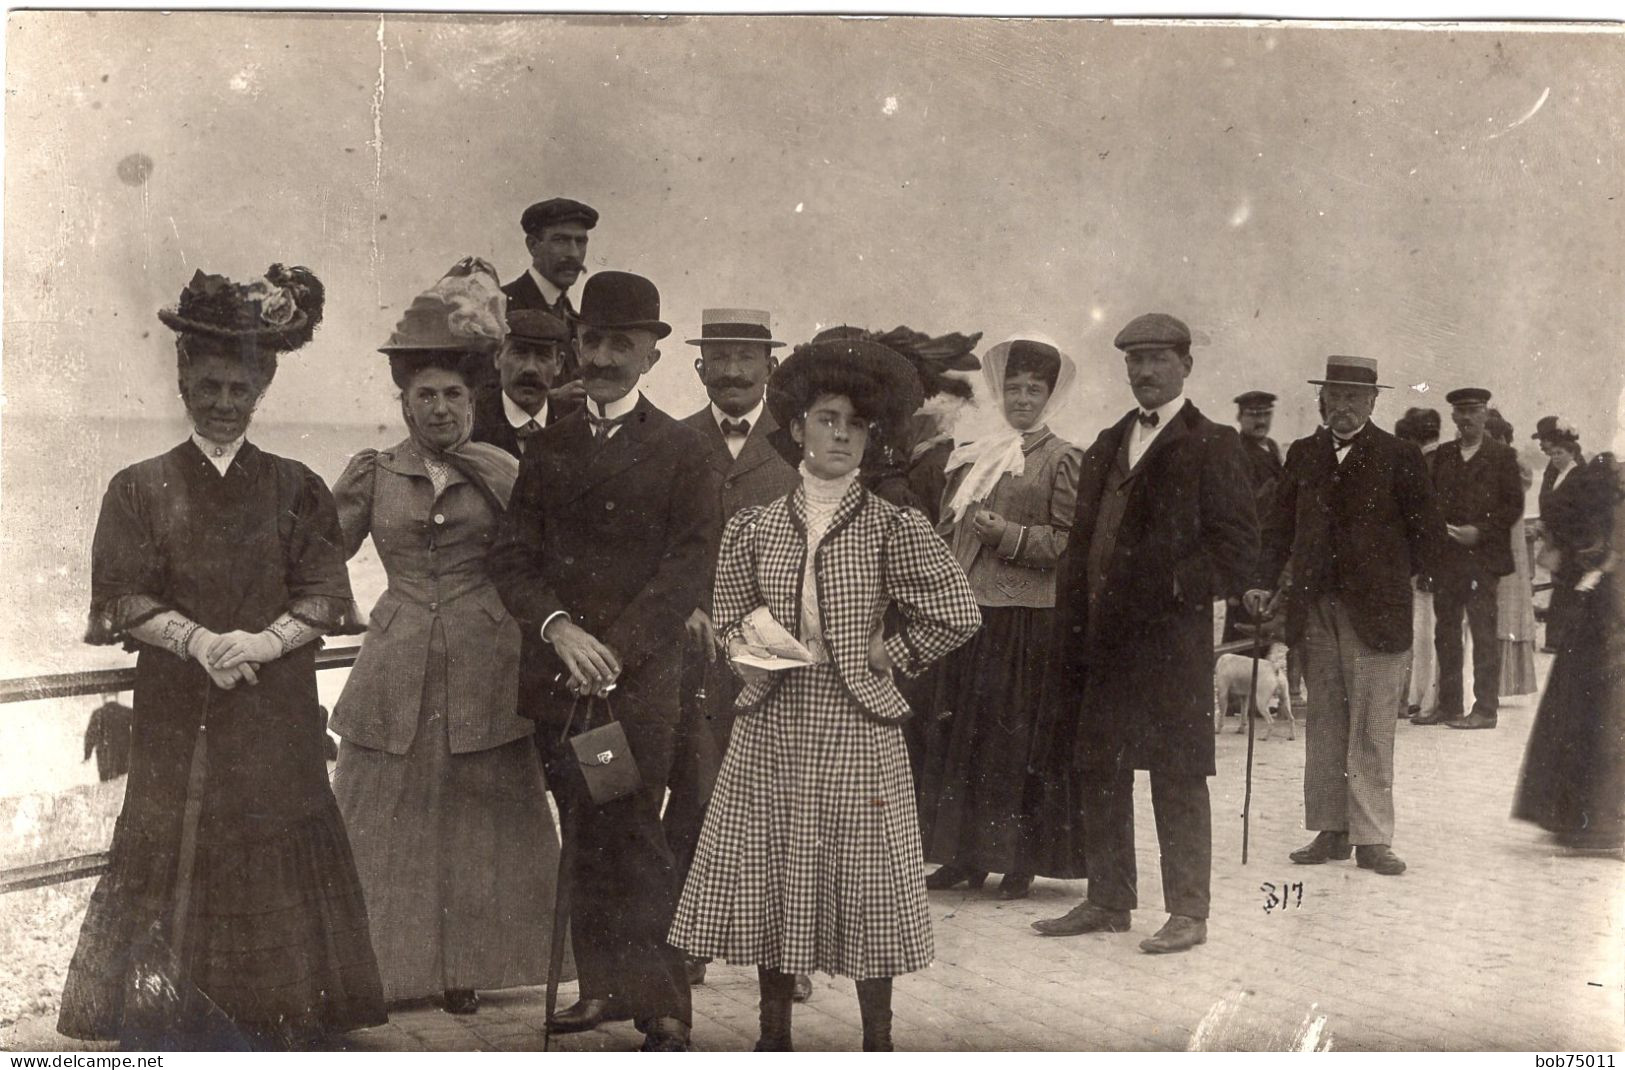 Carte Photo De Femmes élégante Avec Des Hommes Et Des Enfants Se Promenant Sur Le Fronton D'un Plage Vers 1905 - Personnes Anonymes